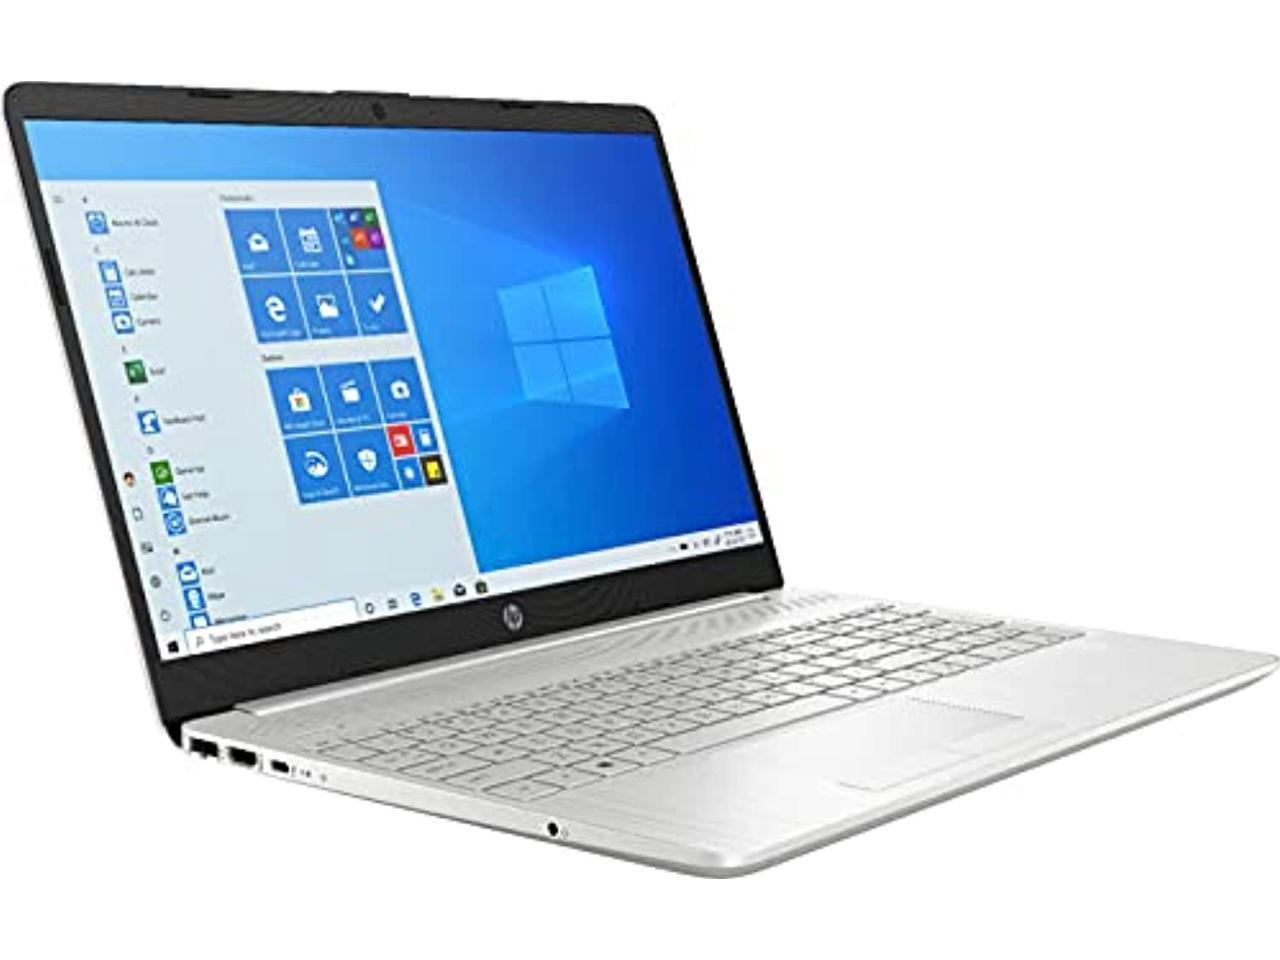 HP 15-dw Laptop Intel Core i3-1115G4 8GB 256GB SSD 15.6 Full HD WLED Win 10 